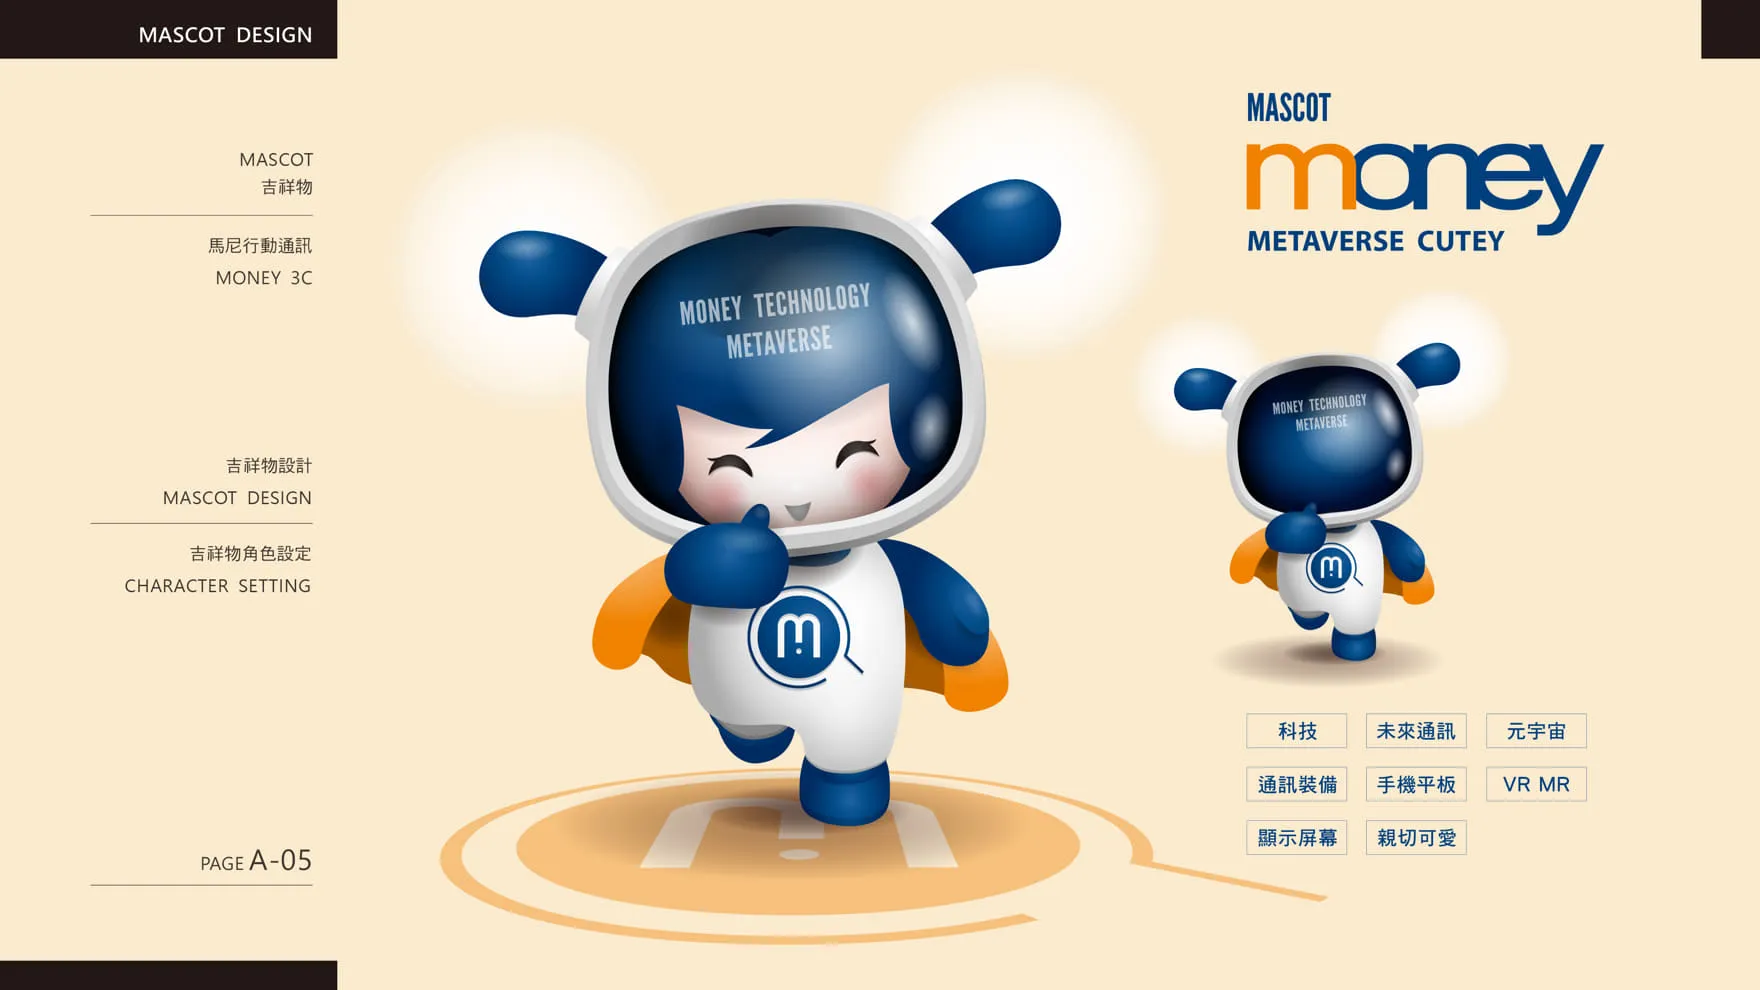 馬尼行動通訊品牌吉祥物角色行銷設計 Mascot Marketing Design